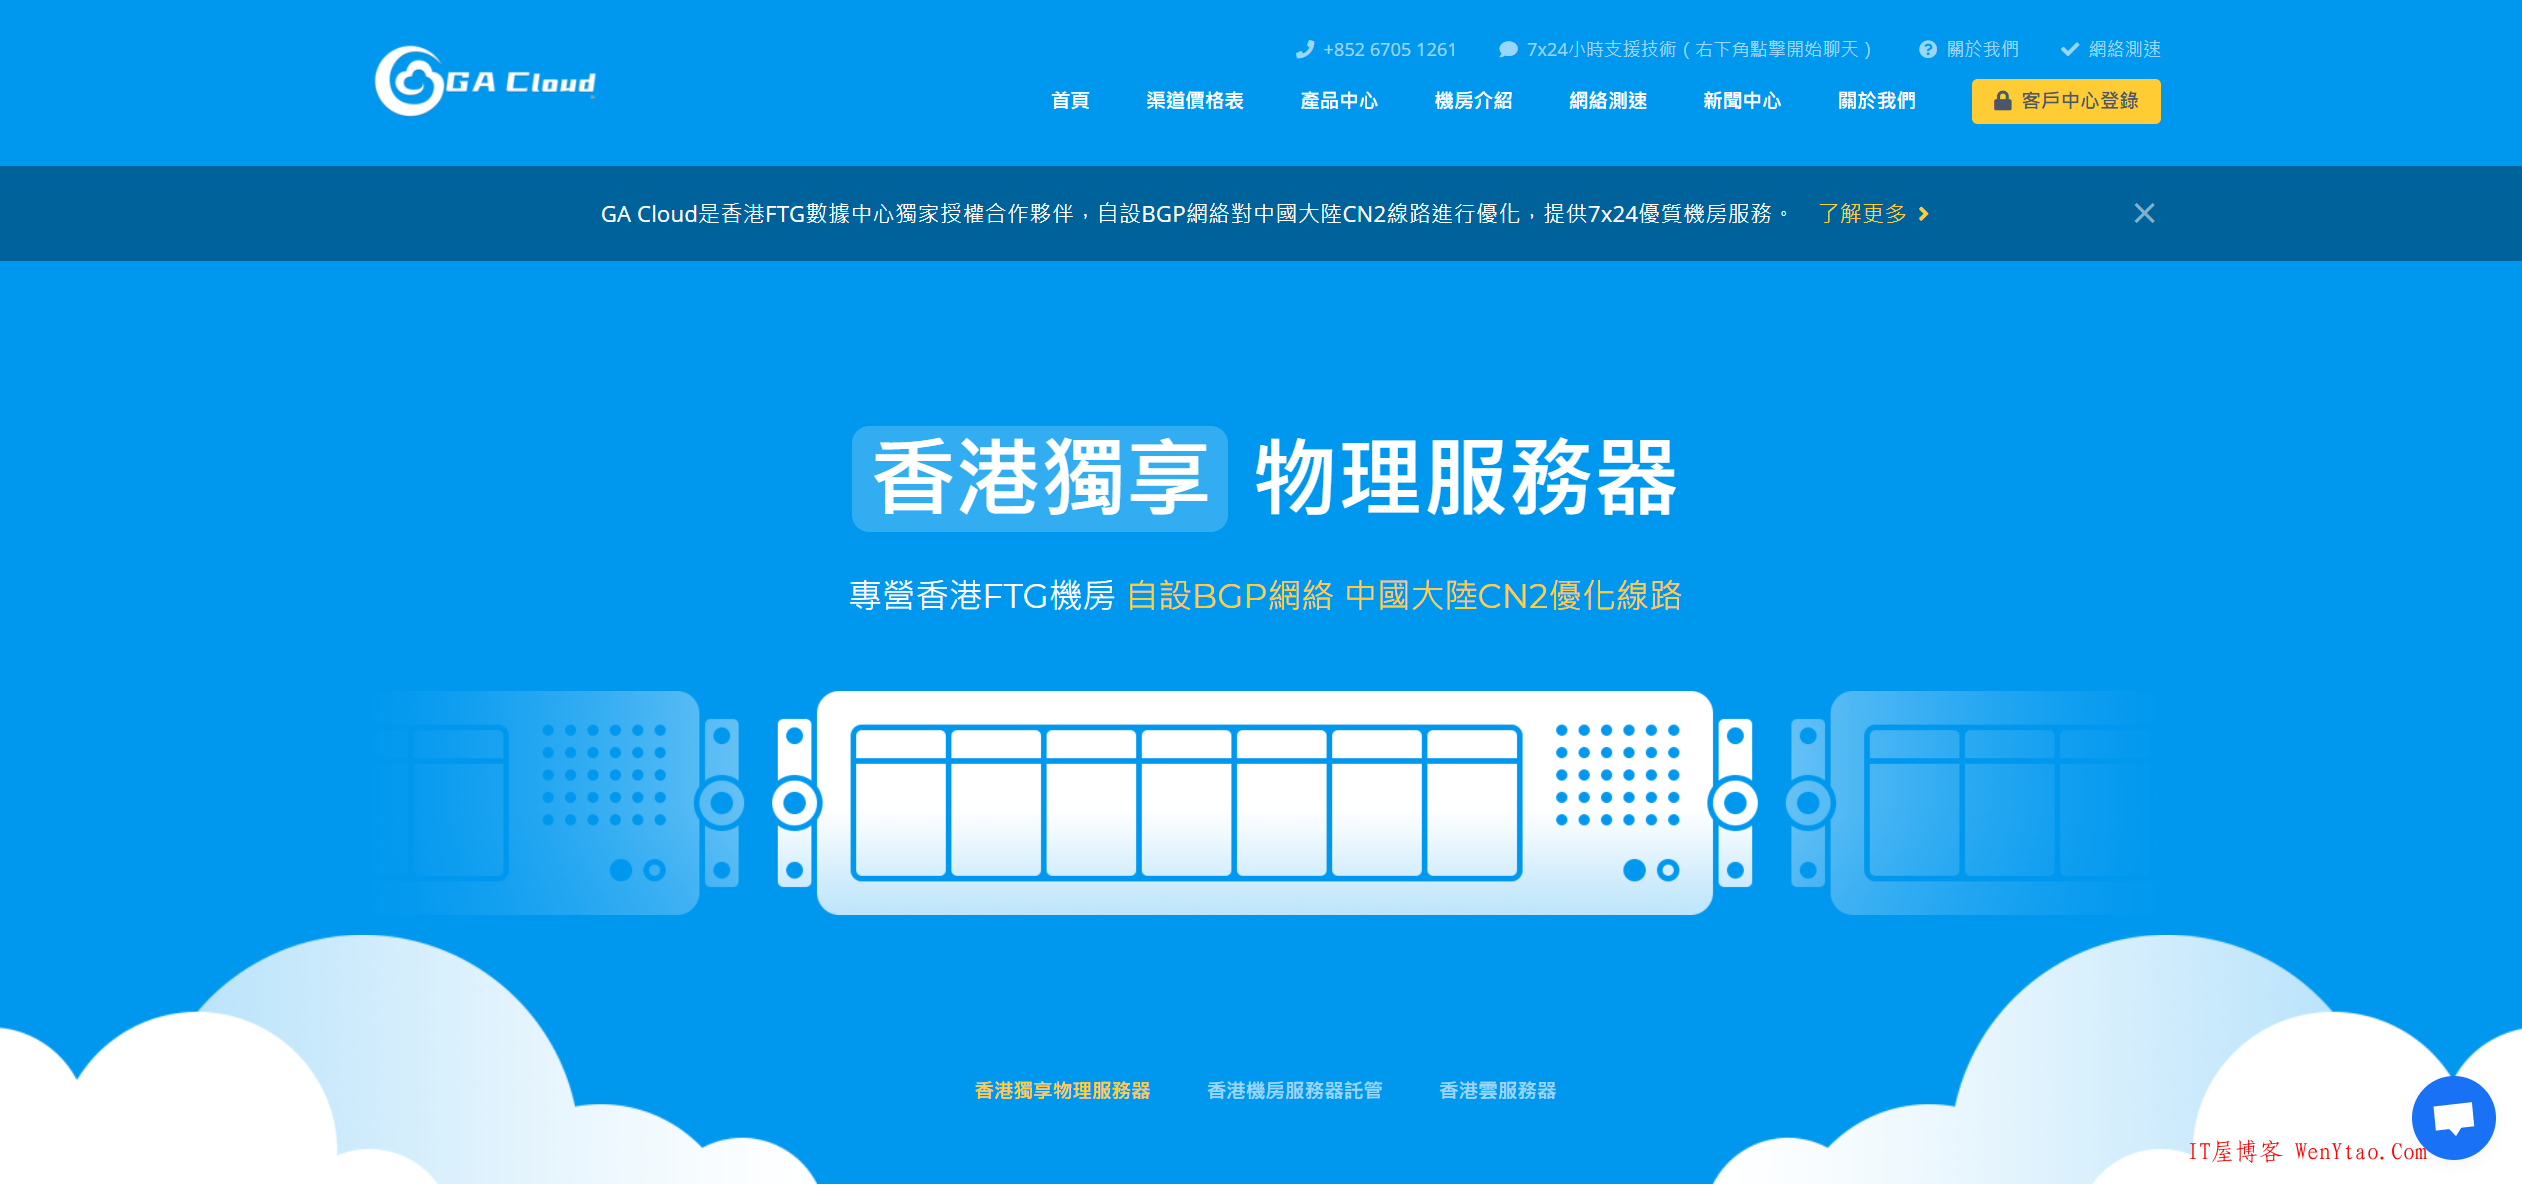 GA Cloud香港机房直销无差价 8月活动物理机母机等产品5折续费同价